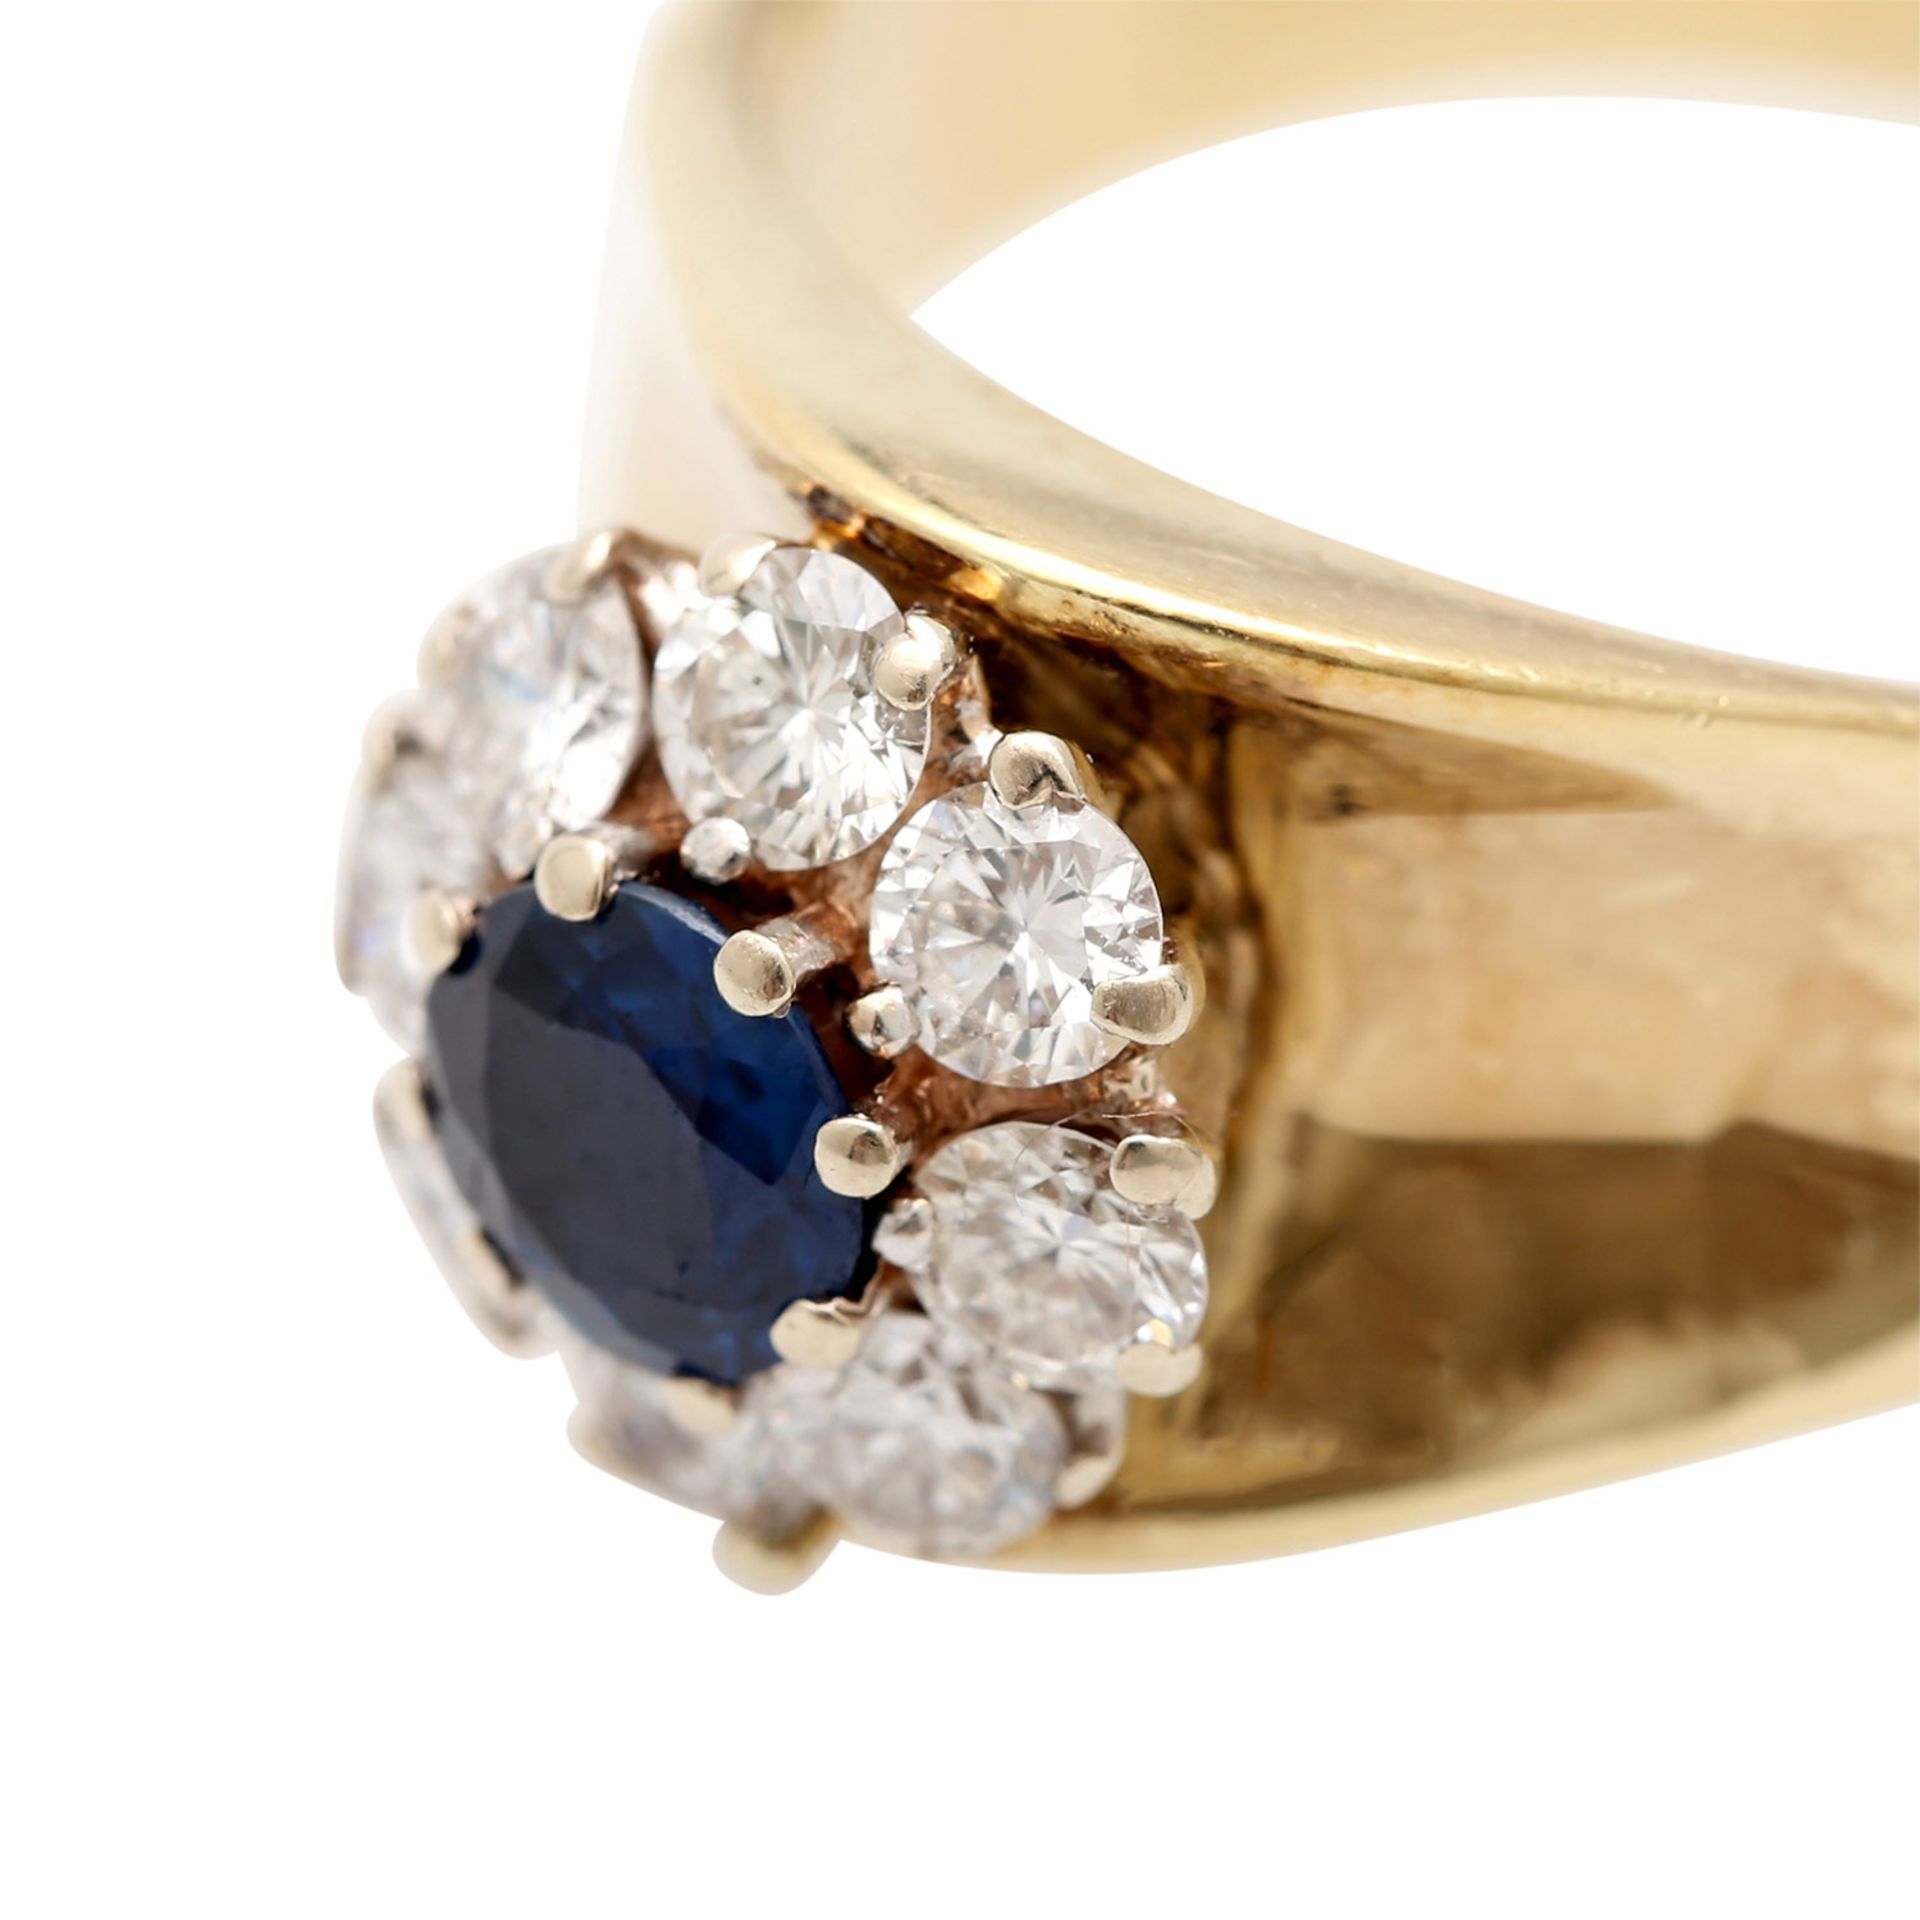 Damenring mit Saphir und Diamanten,8 Brillanten von zus. ca. 0,96 ct. (grav.), ca. FW- - Bild 5 aus 5